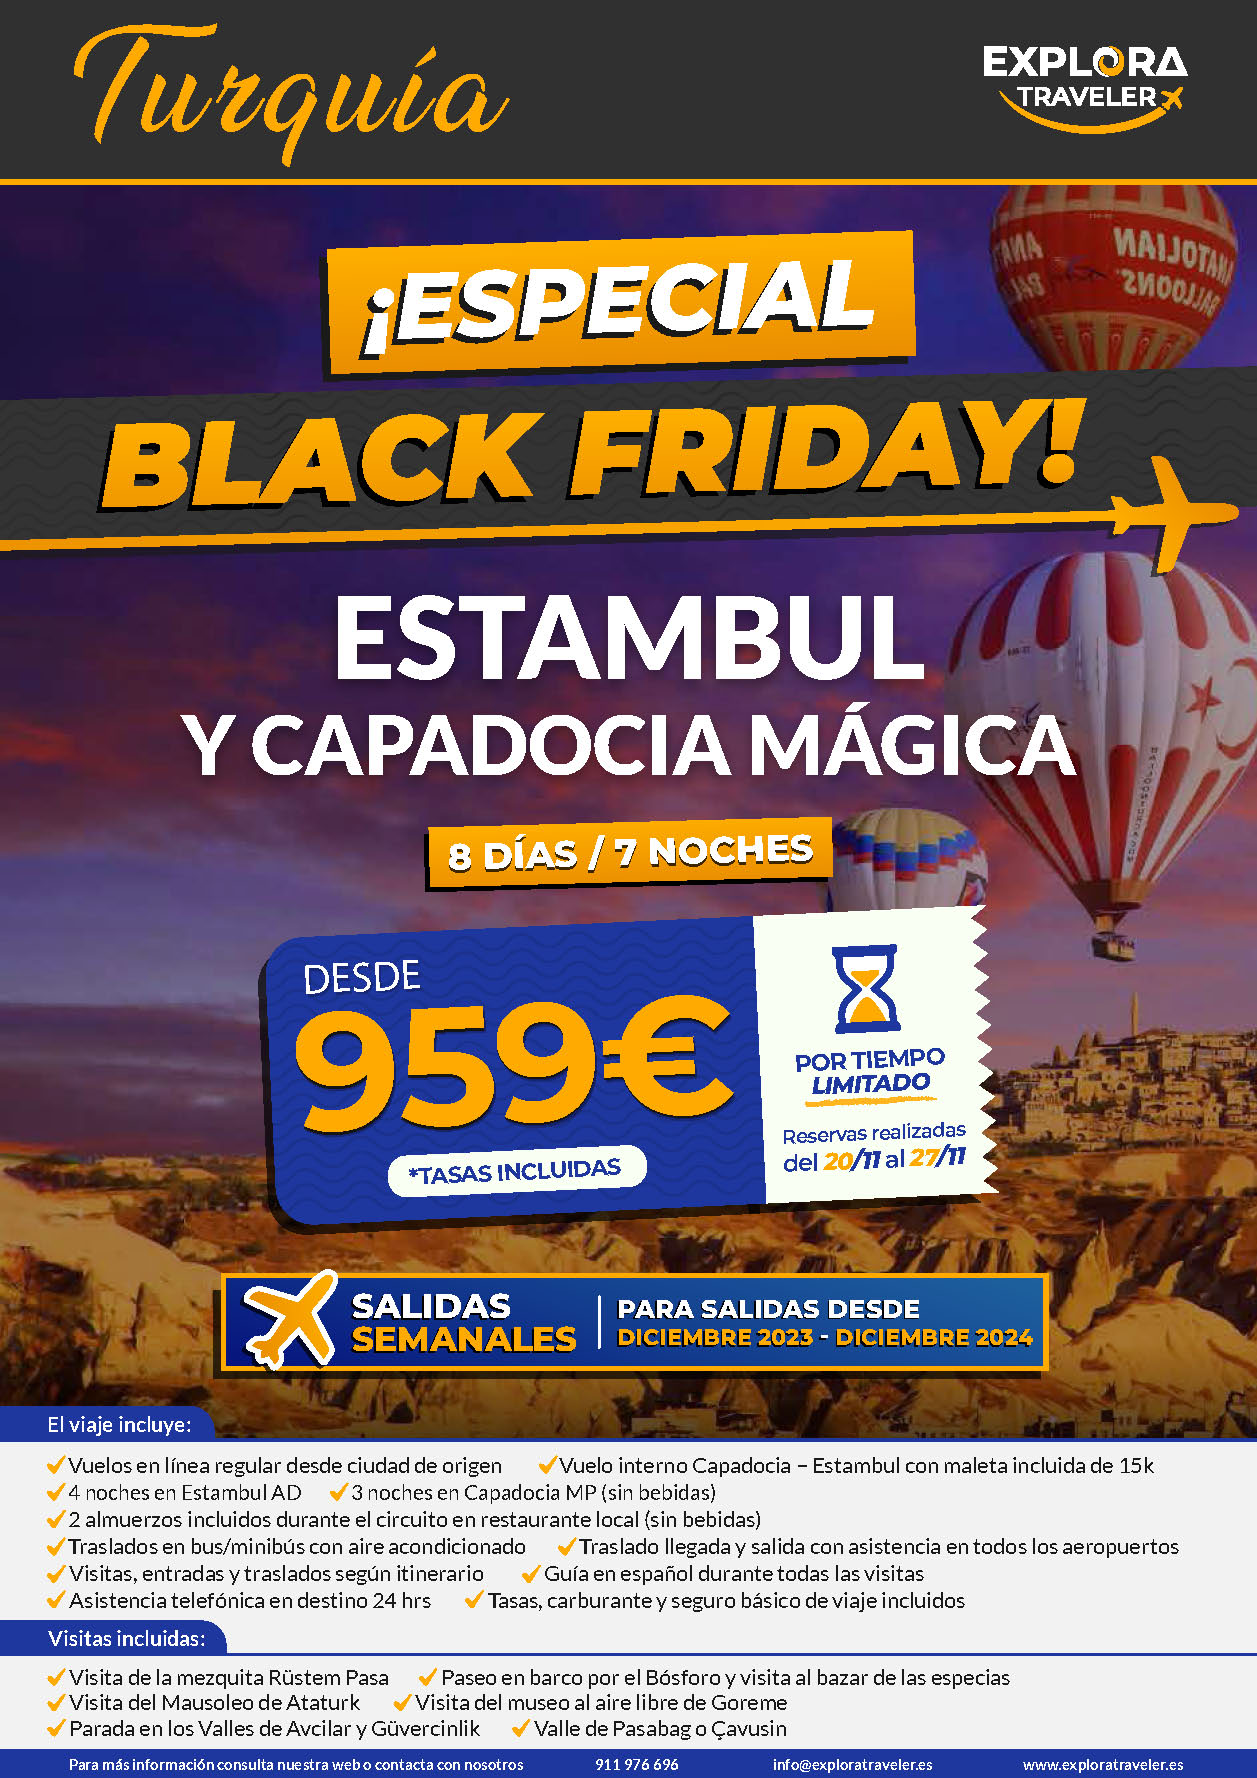 Oferta Explora Traveler Black Friday Turquia Estambul y Capadocia 8 dias salidas 2023 y 2024 vuelo directo desde Madrid Barcelona Valencia Malaga